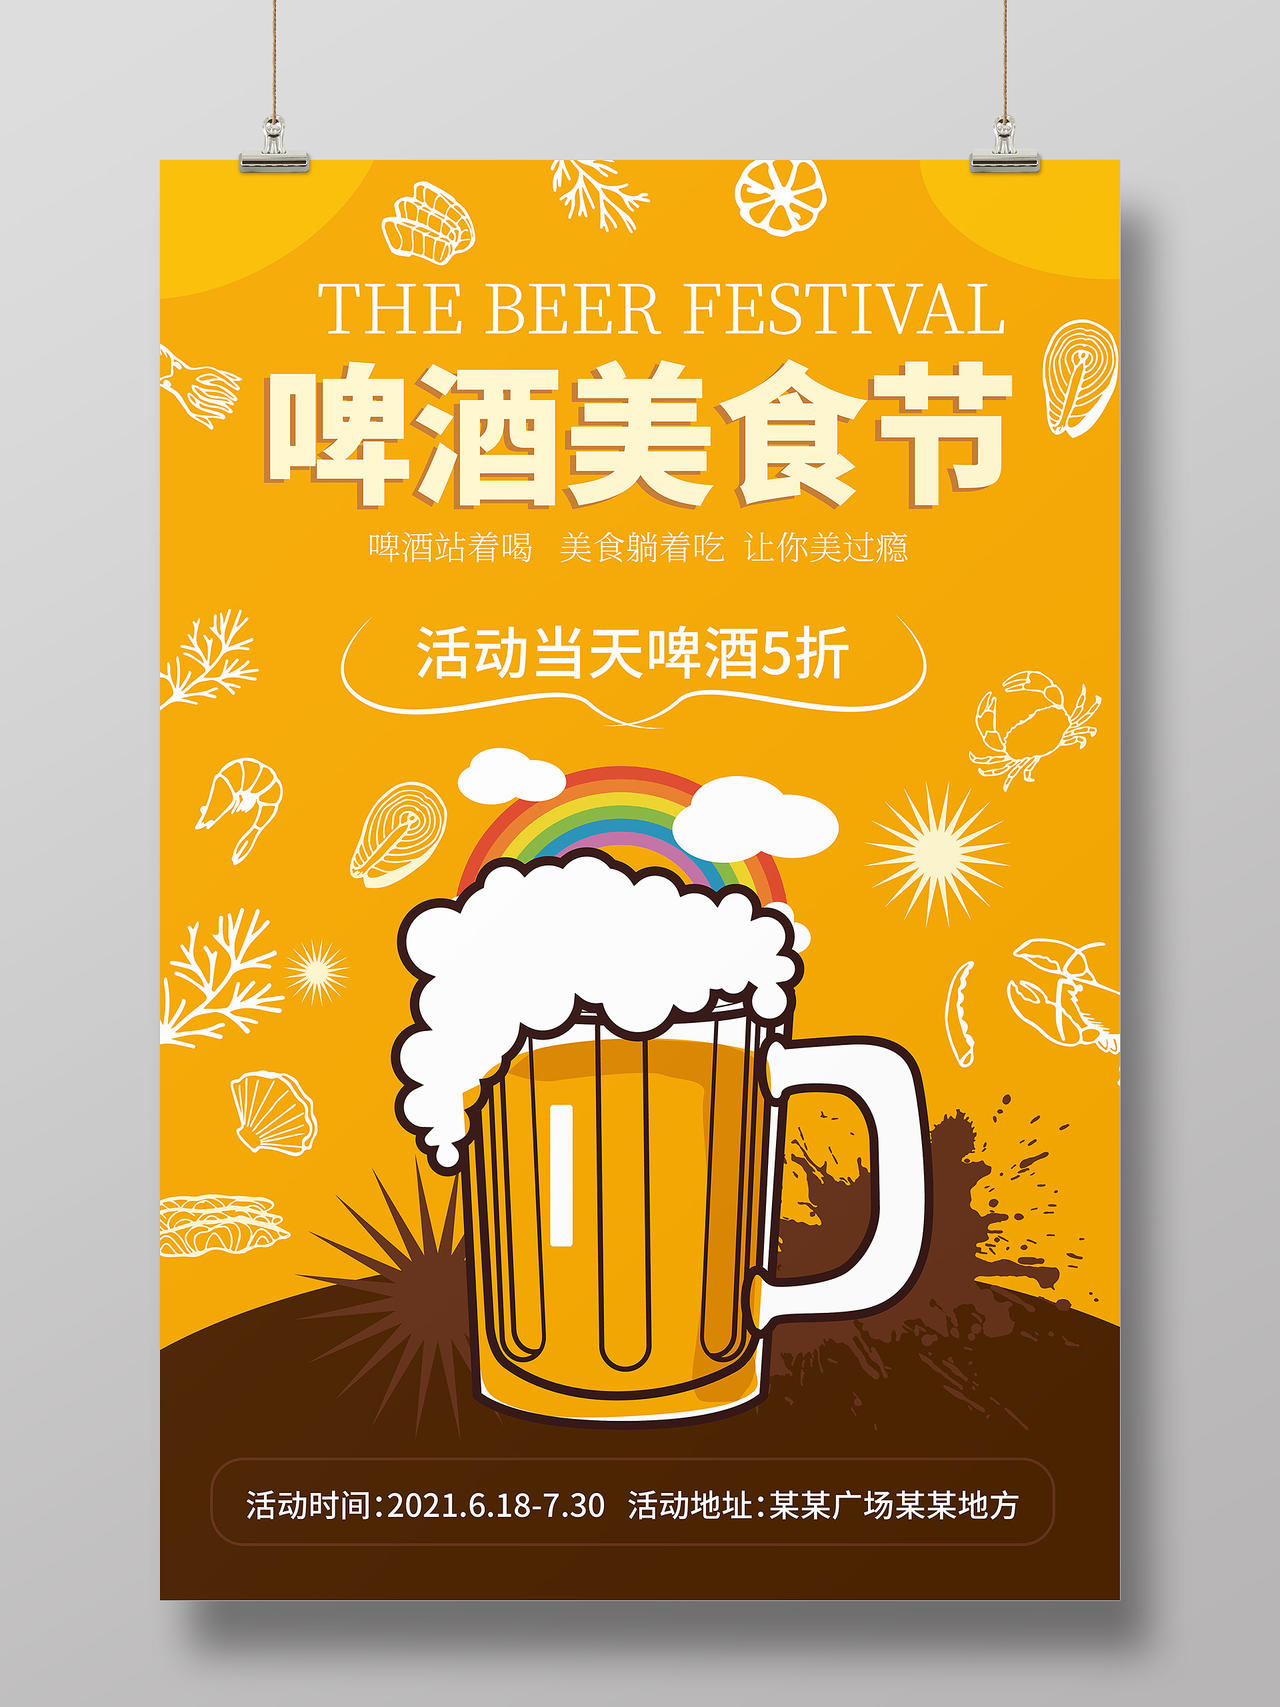 黄颜色卡通风格啤酒美食节促销宣传海报设计